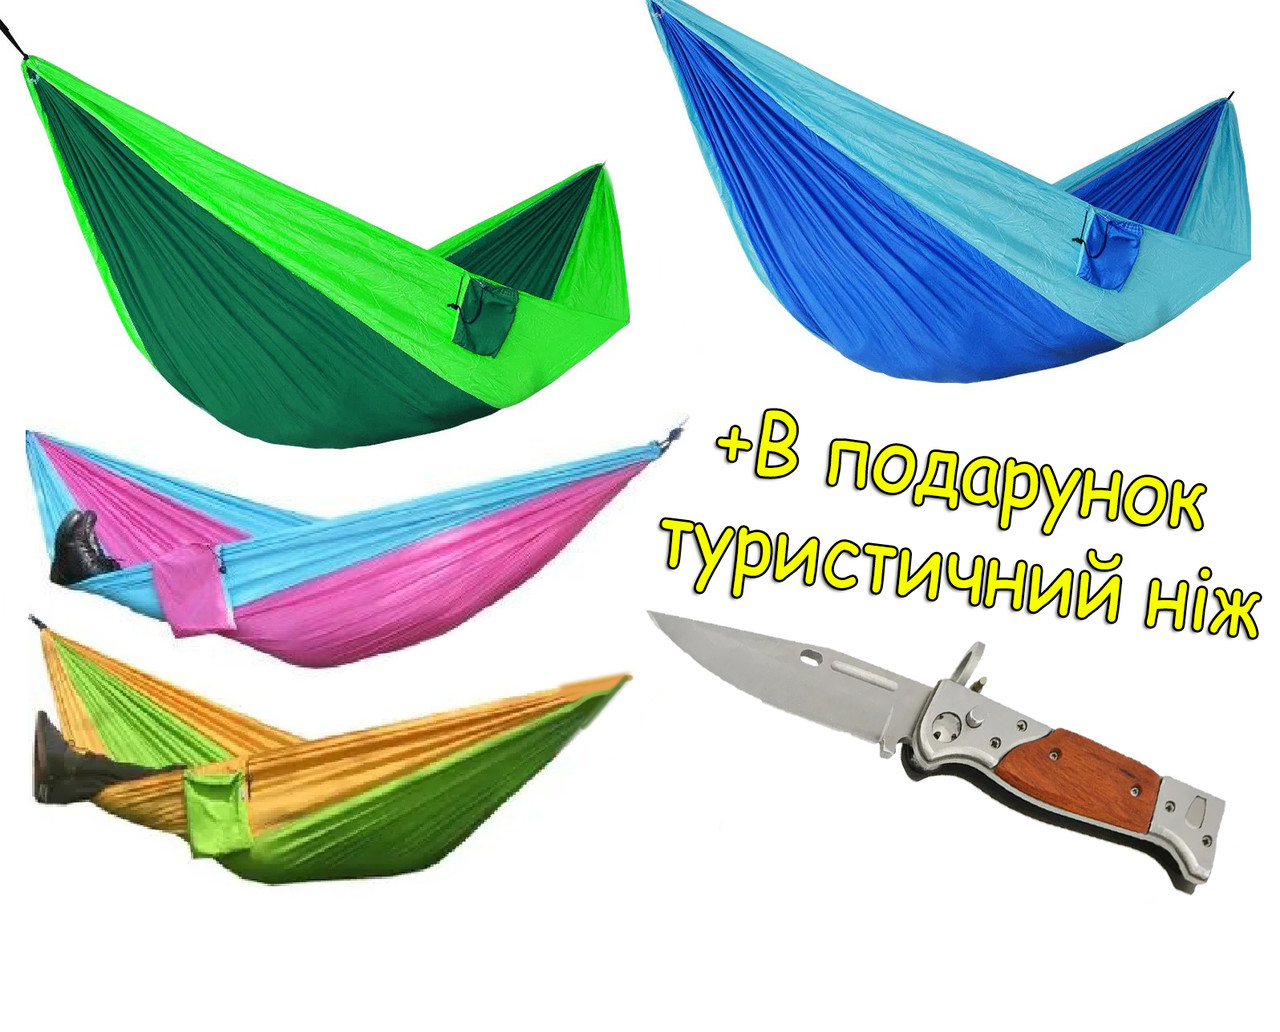 Підвісний гамак Double hammock 250х140 см, тканина Т210 парашутний шовк + в подарунок Туристичний ніж